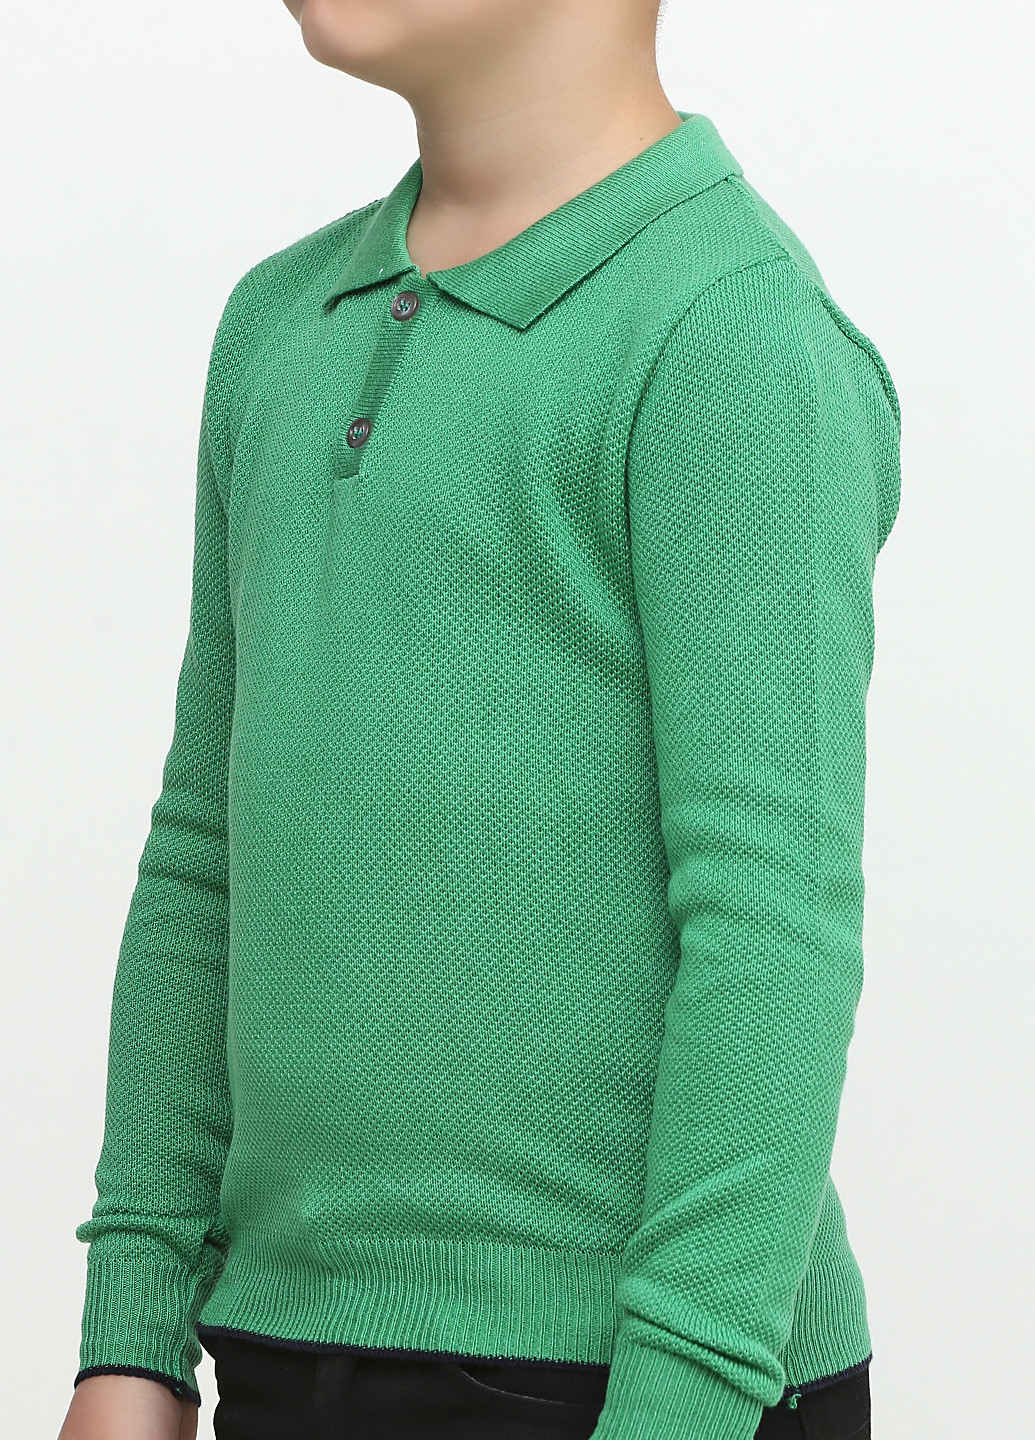 Зеленая детская футболка-поло для мальчика Top Hat Kids однотонная